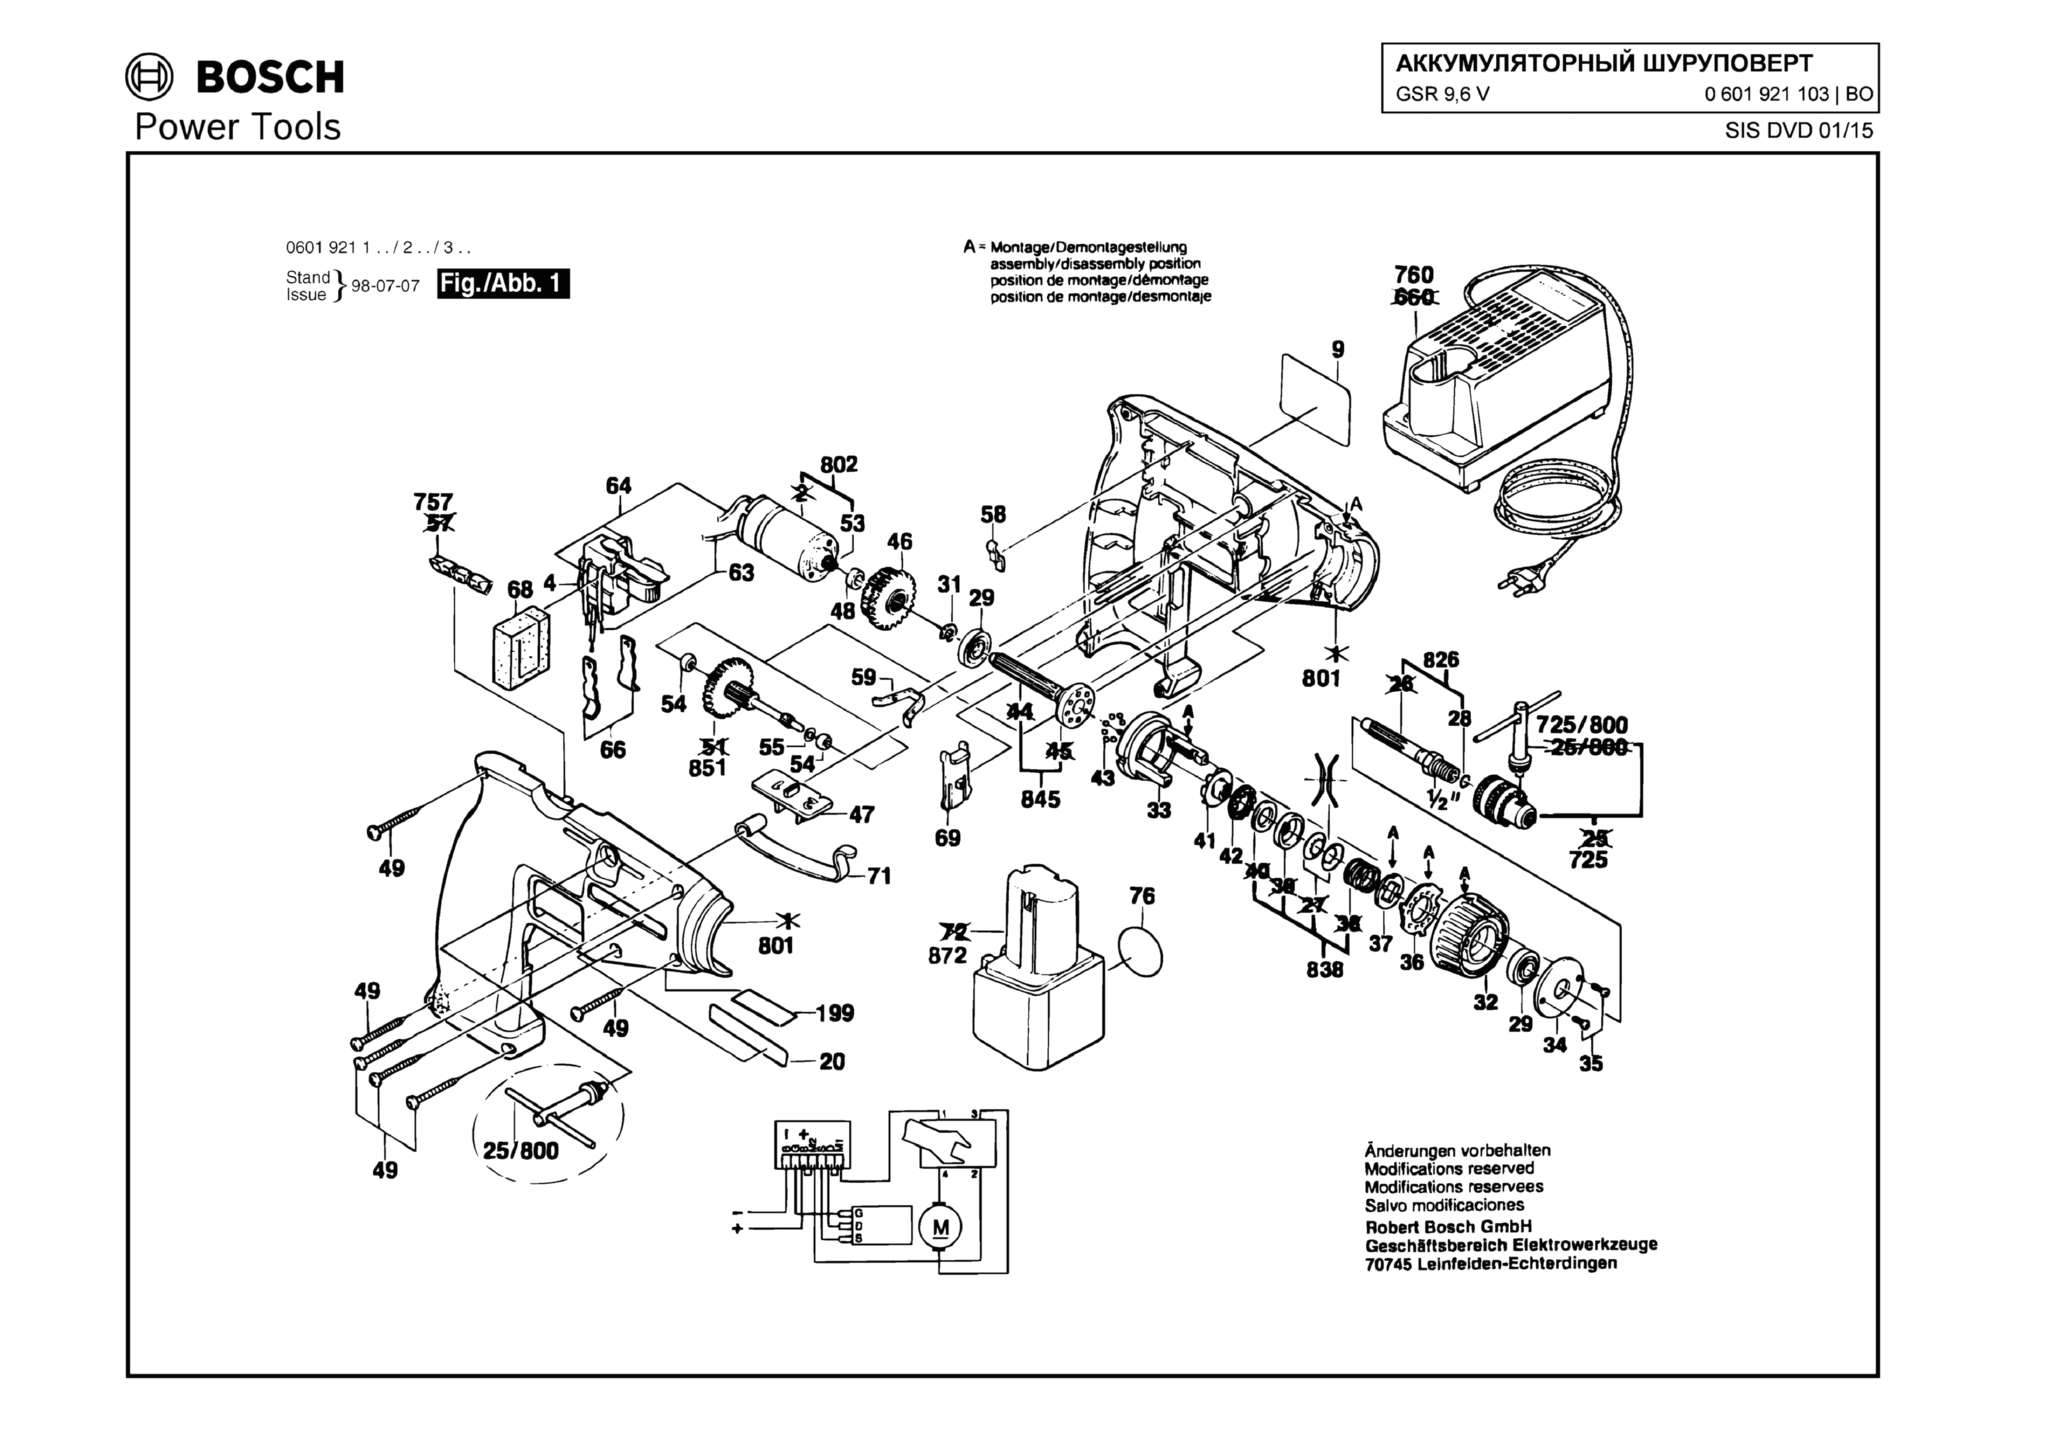 Запчасти, схема и деталировка Bosch GSR 9,6 V (ТИП 0601921103)